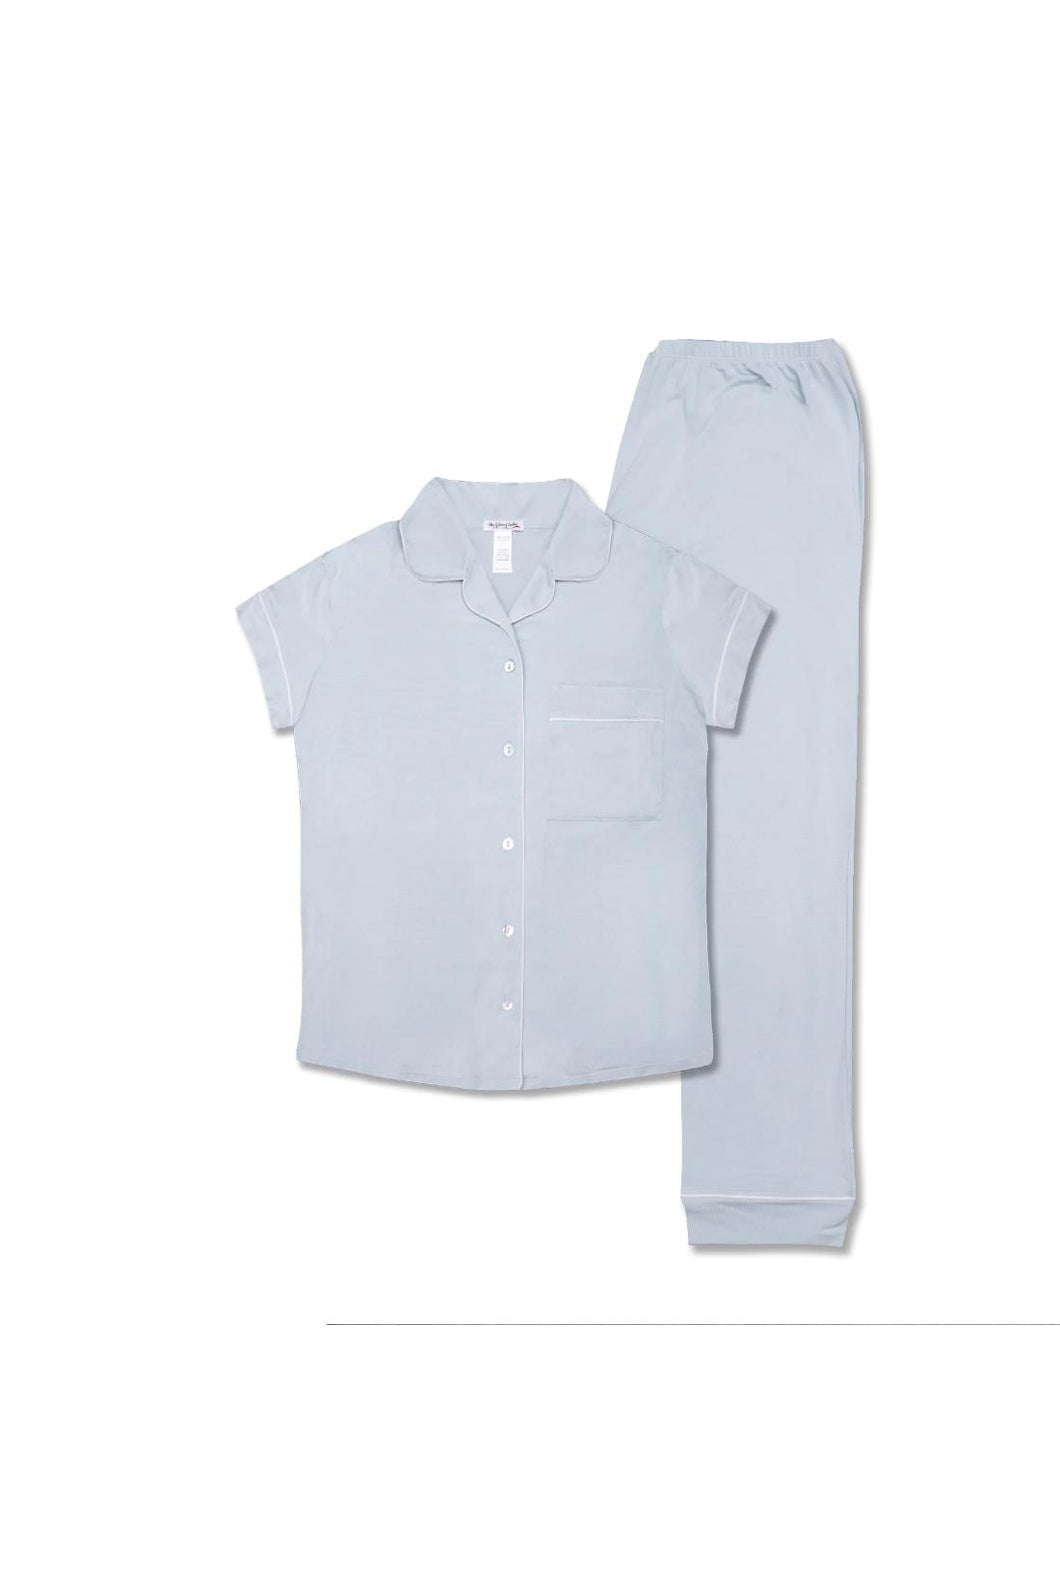 Silver Lining Kris Pajama Set